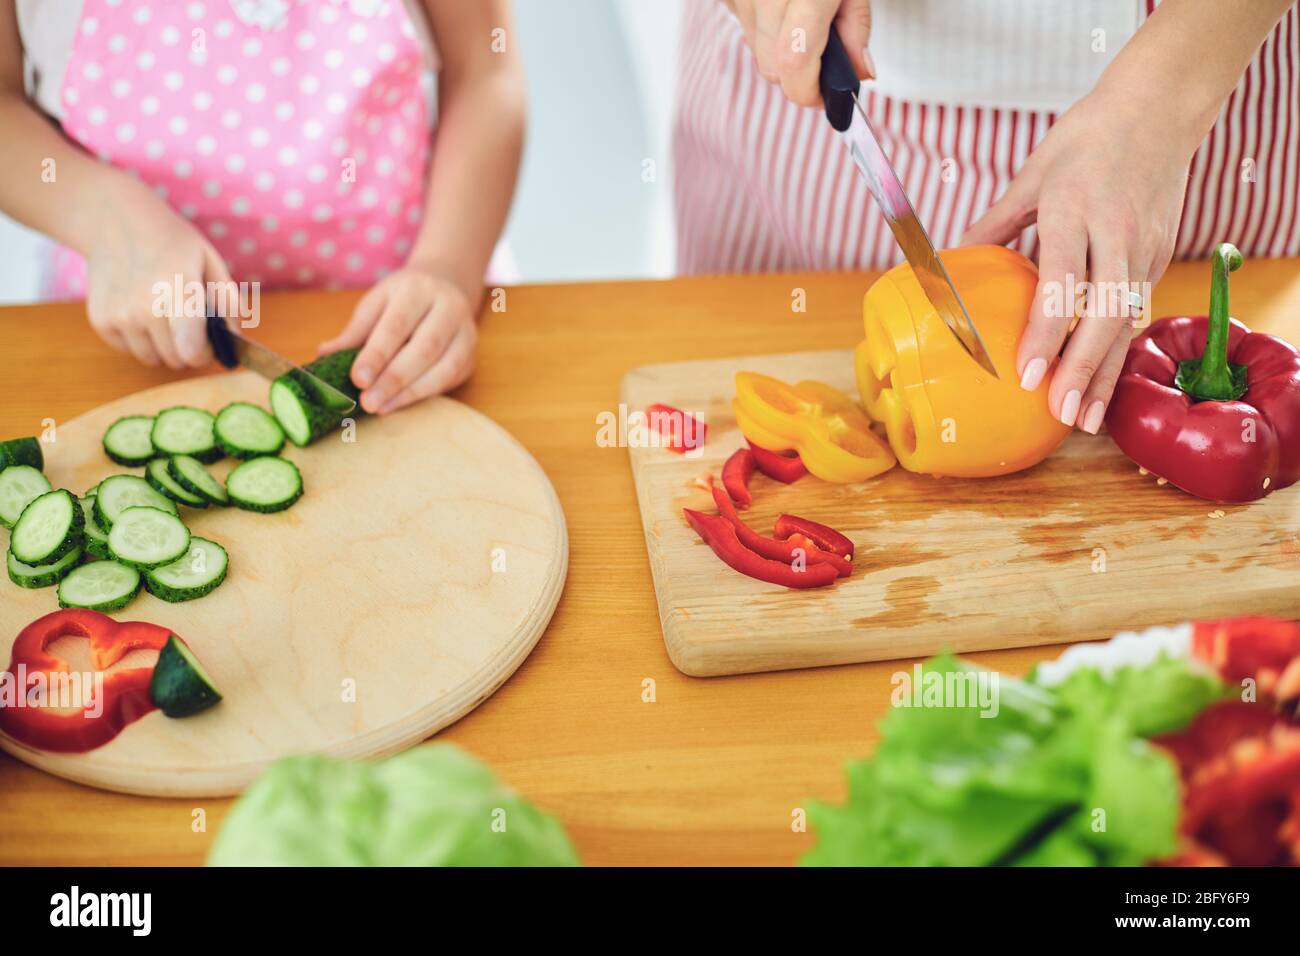 Sans visage. Les mains familiales préparent une salade de légumes frais sur la table dans la cuisine. Banque D'Images